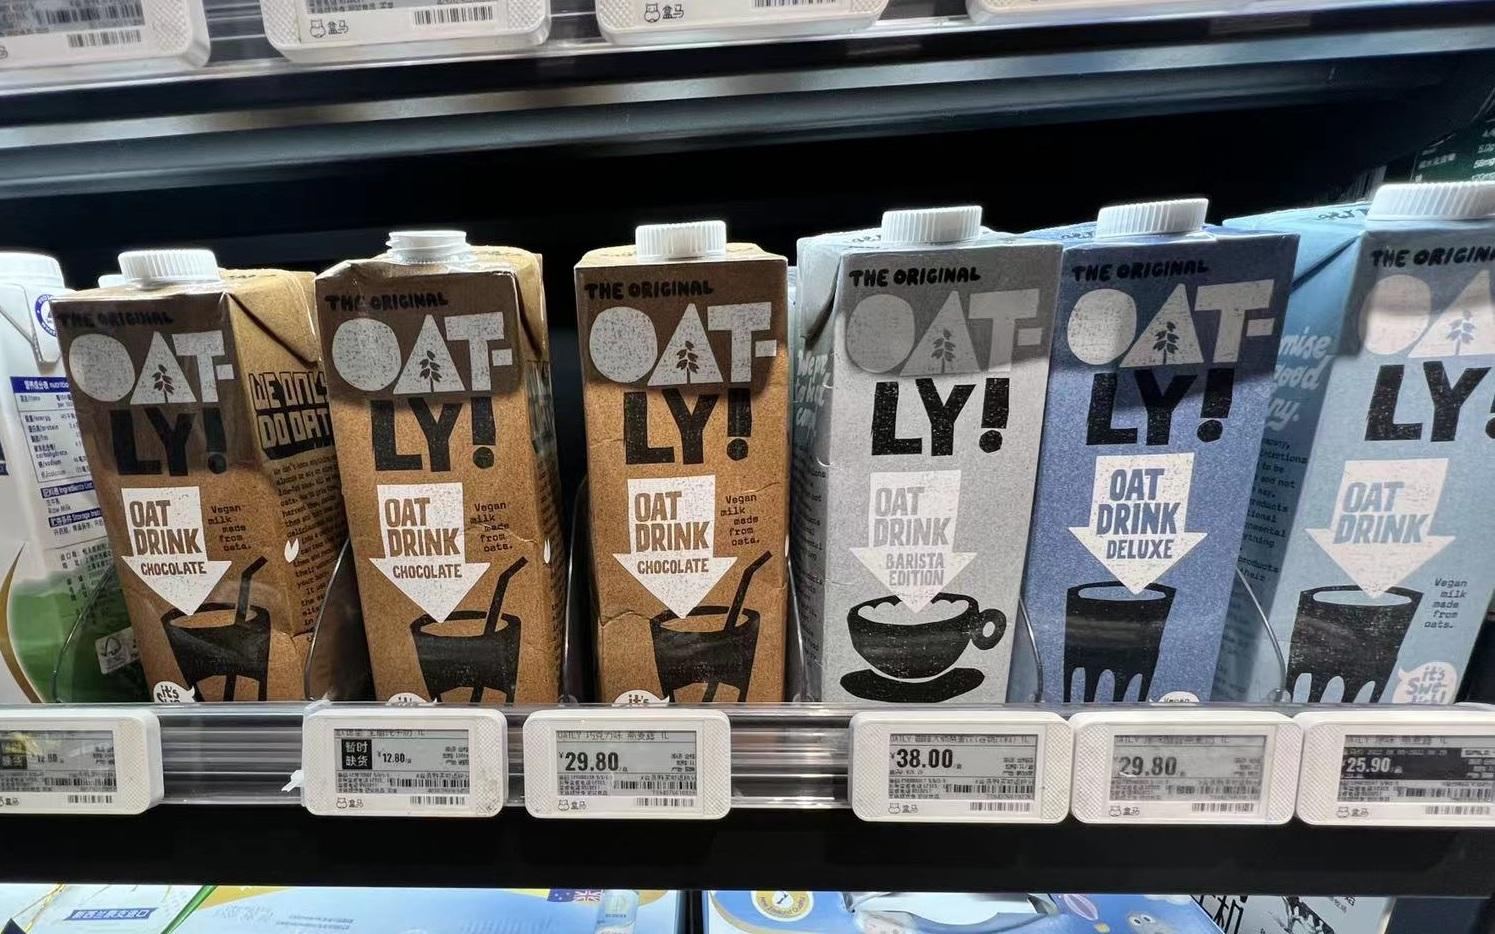 市场上Oatly燕麦奶售价较高。 新京报首席记者 郭铁 摄